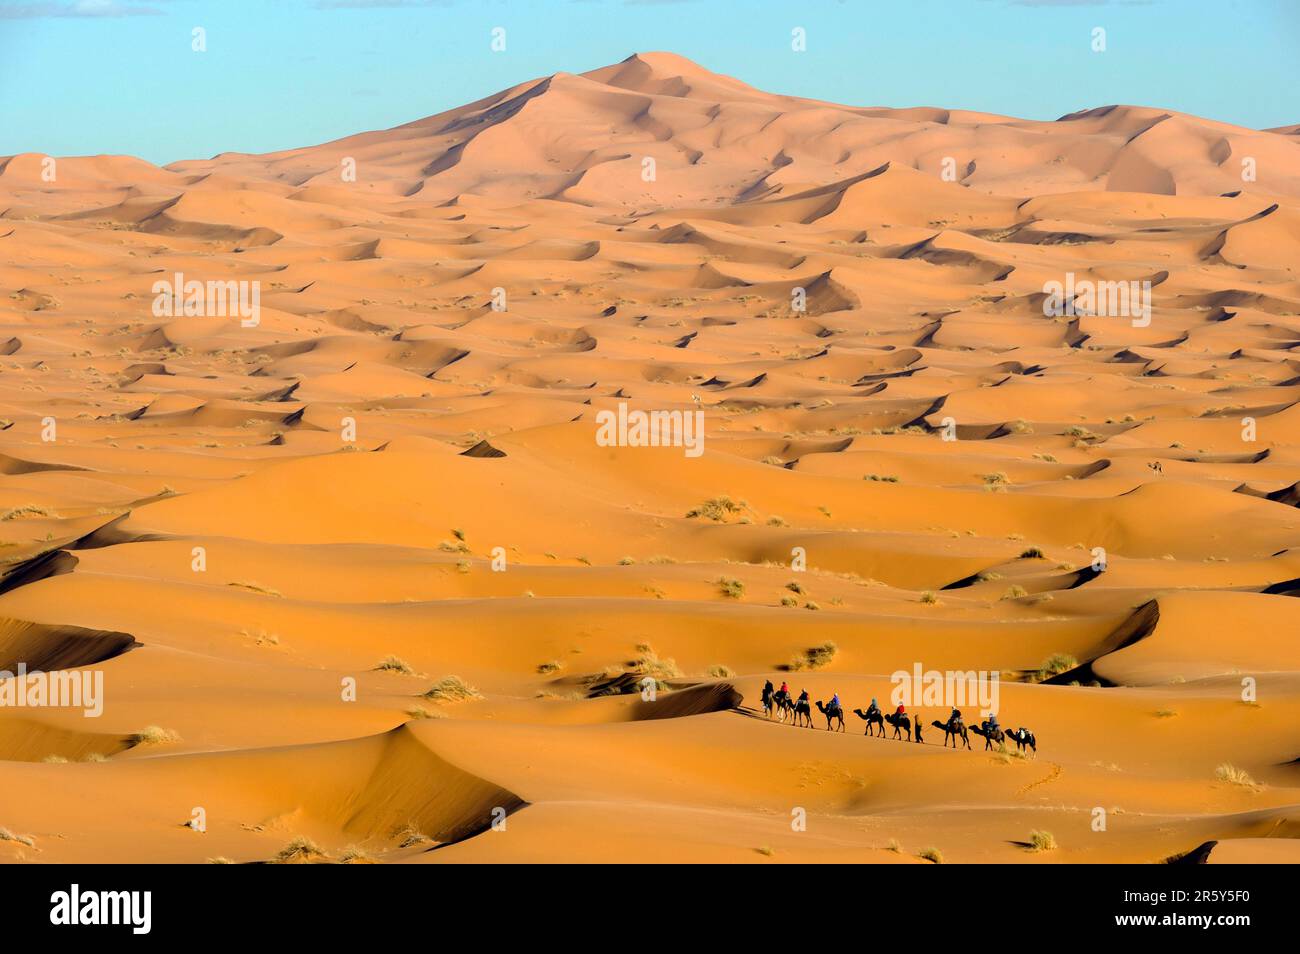 Maroc, chauffeur de chameau, Berber, désert d'Erg Chebbi, dunes, caravane Banque D'Images